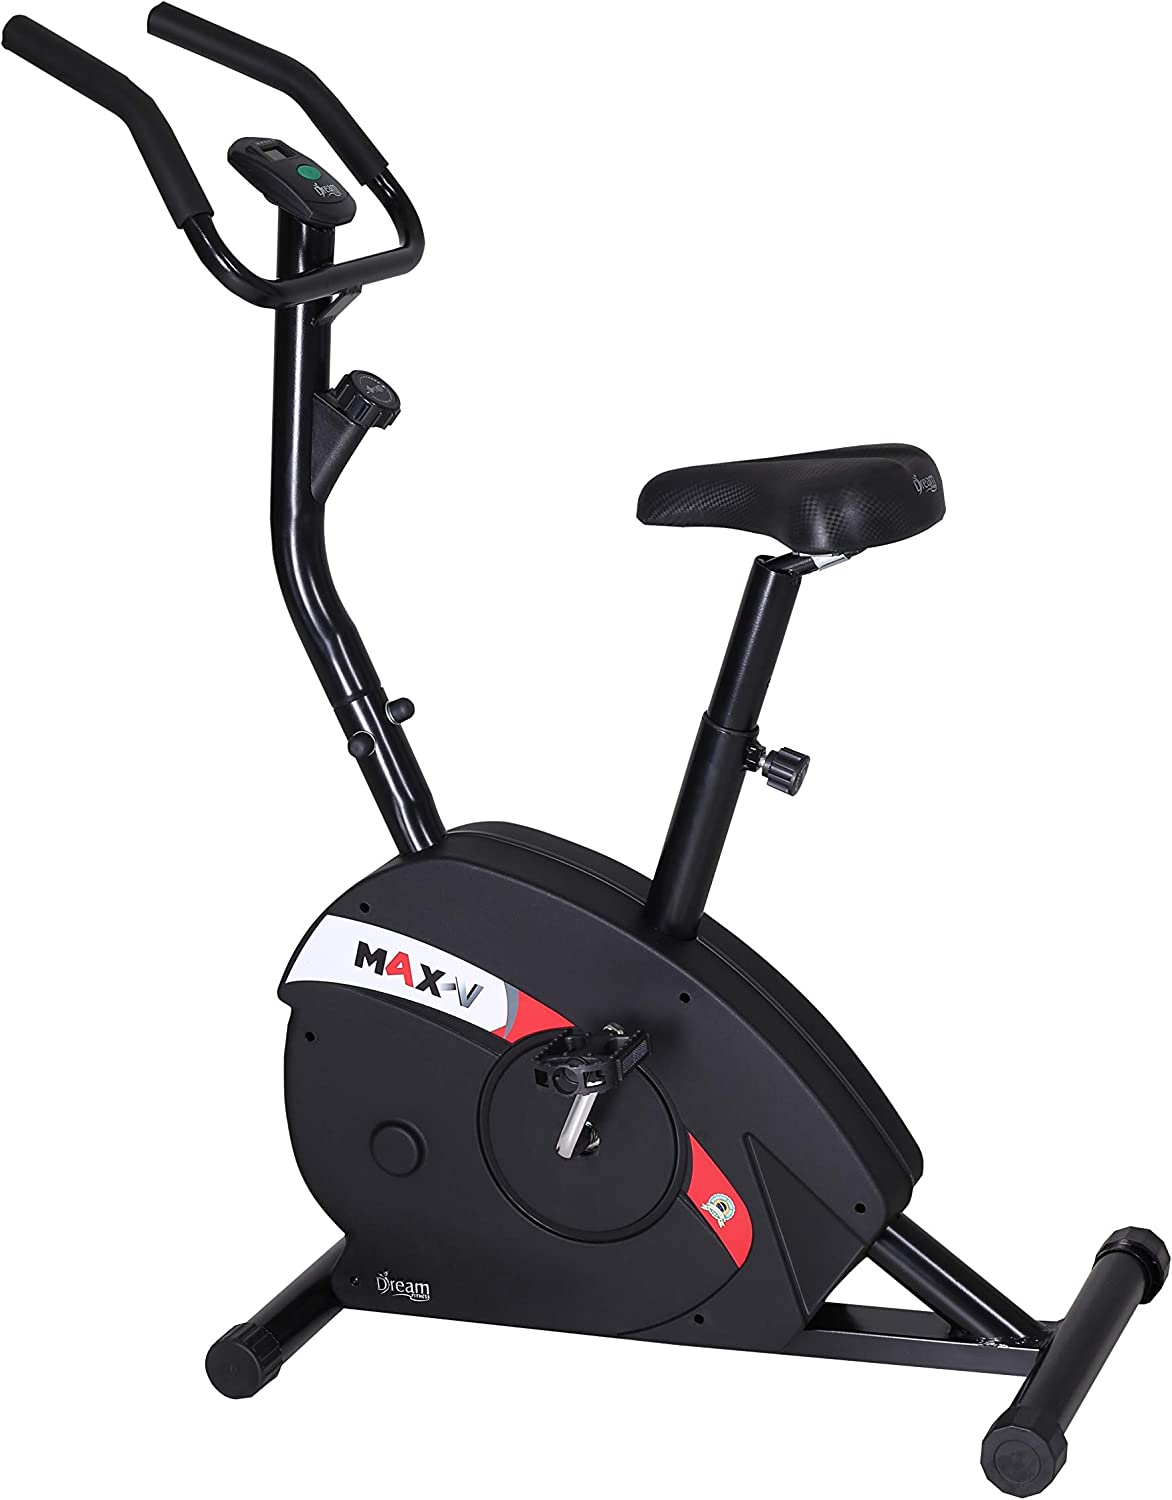 Dream Fitness Bicicleta Ergométrica Vertical MAX V - Fonte: Amazon.